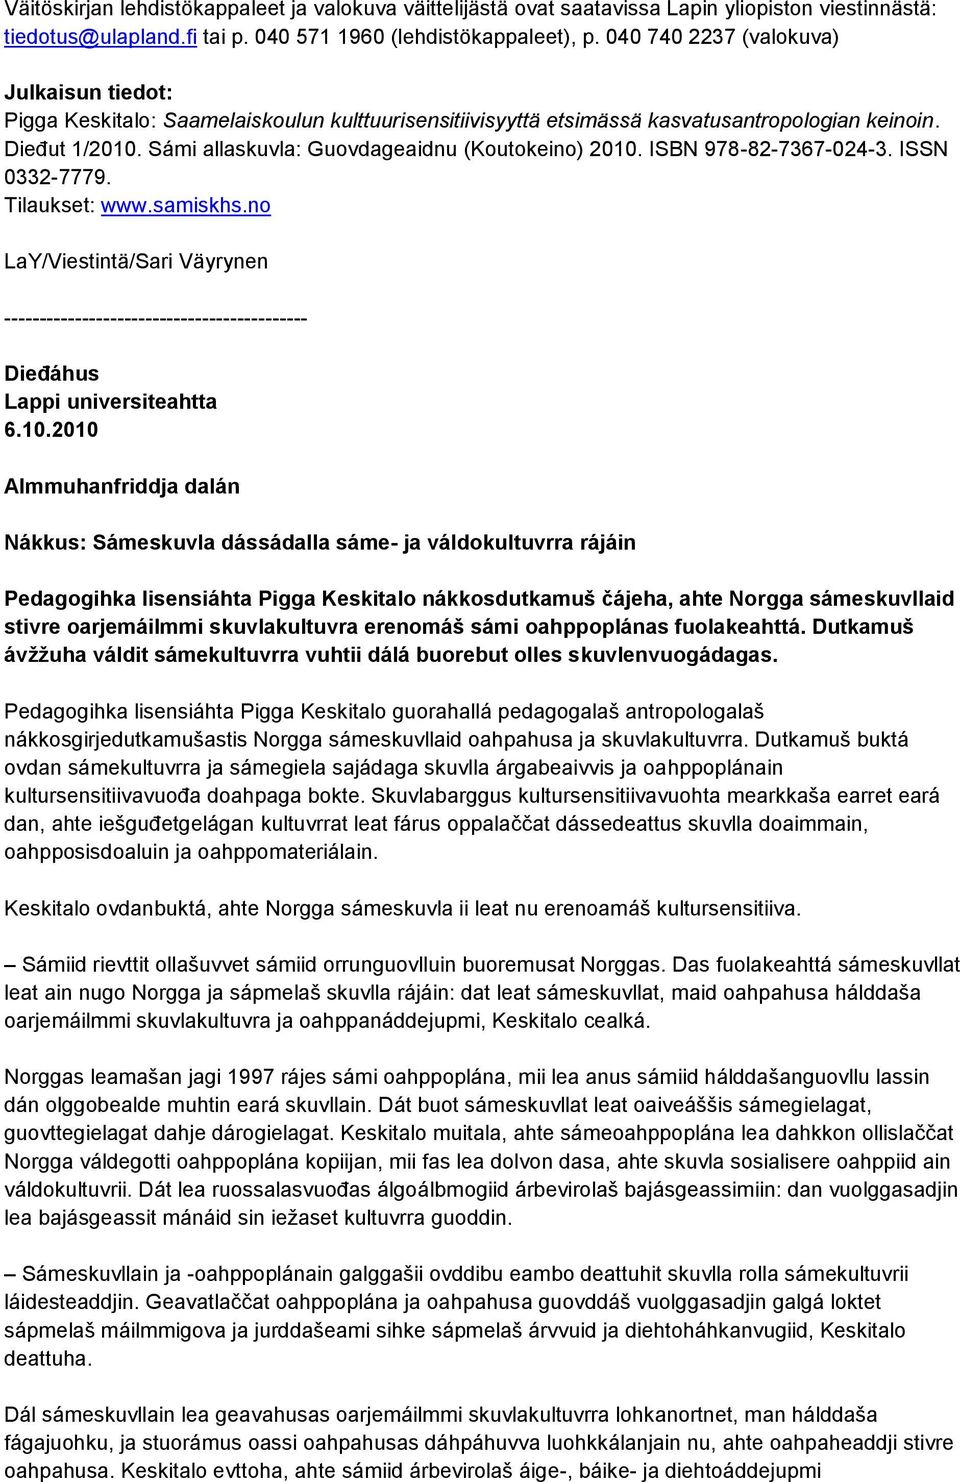 Sámi allaskuvla: Guovdageaidnu (Koutokeino) 2010. ISBN 978-82-7367-024-3. ISSN 0332-7779. Tilaukset: www.samiskhs.